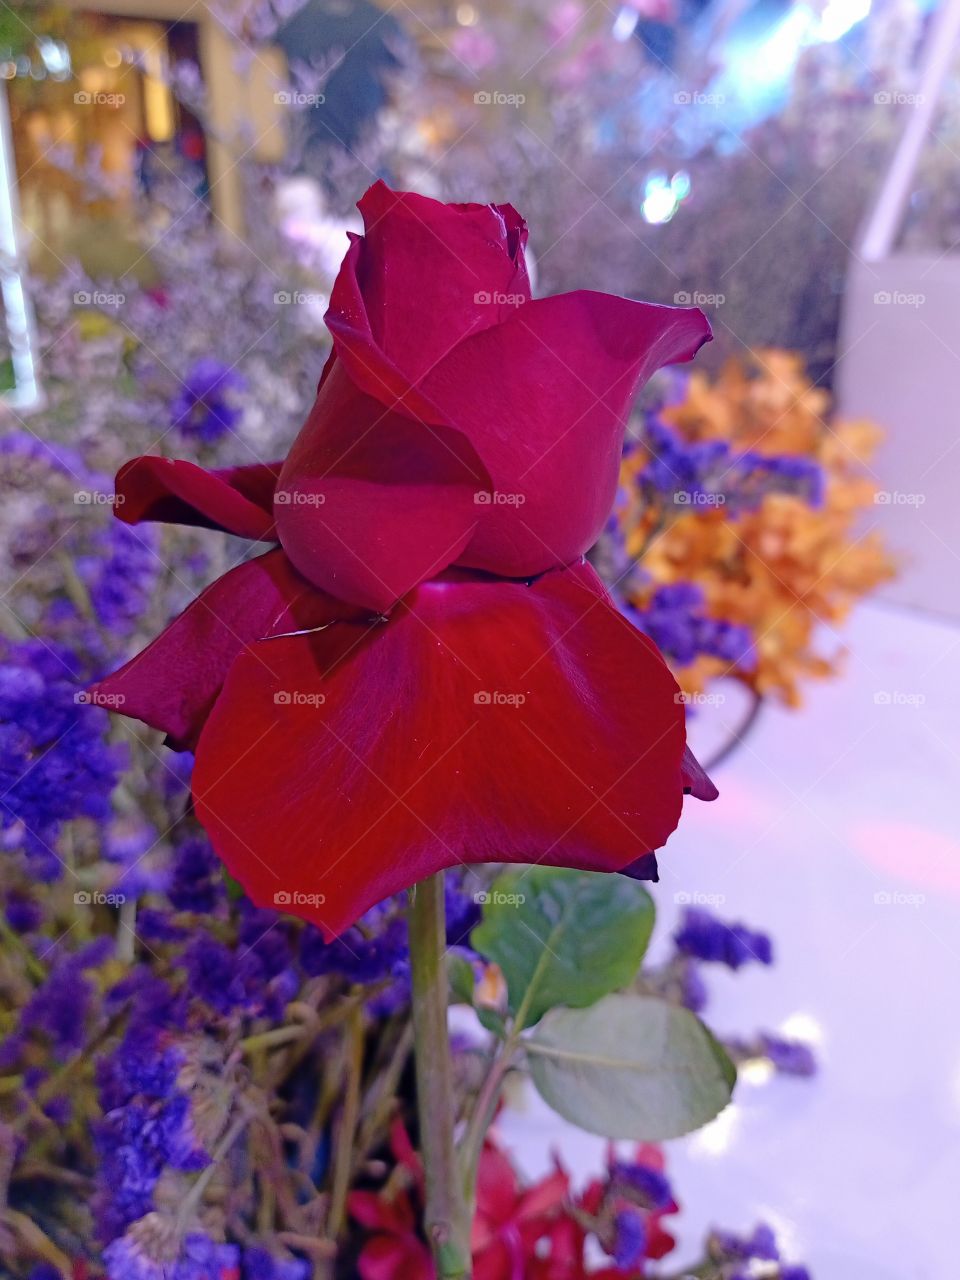 Beautiful red rose